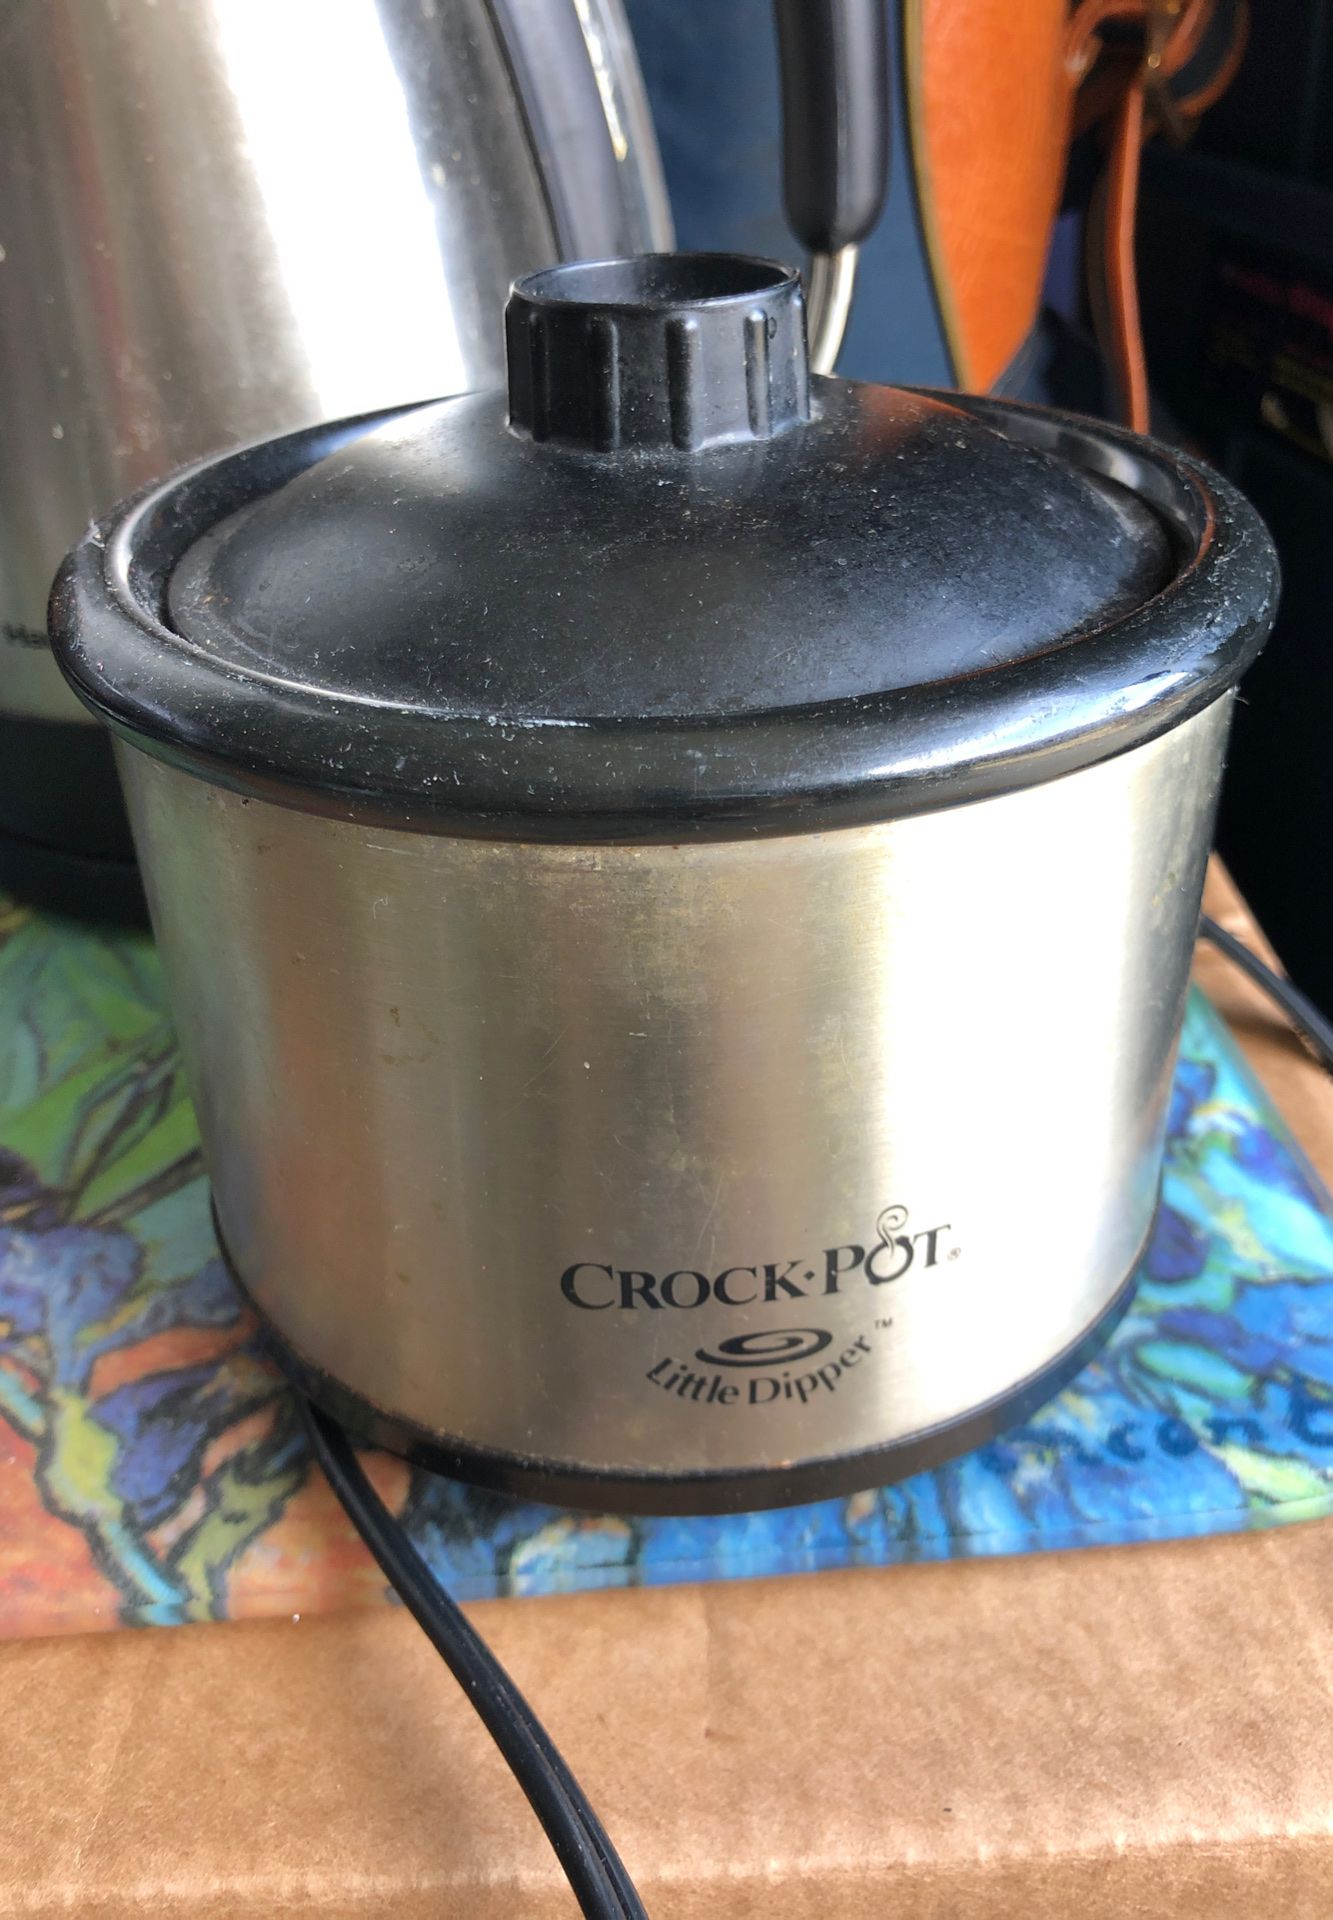 Little Dipper crock pot